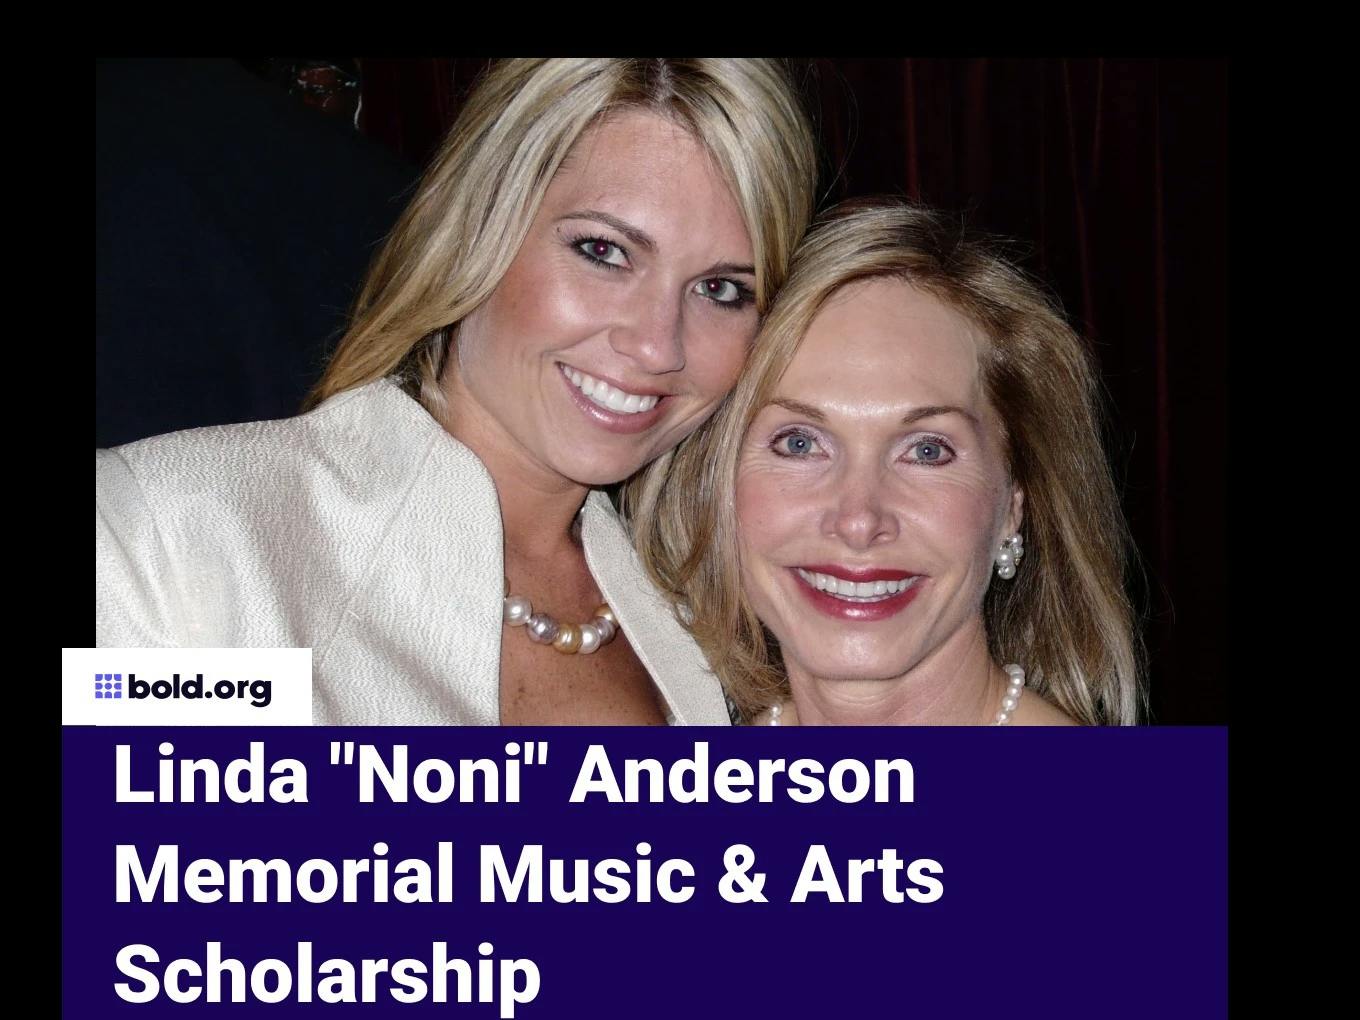 Linda "Noni" Anderson Memorial Music & Arts Scholarship